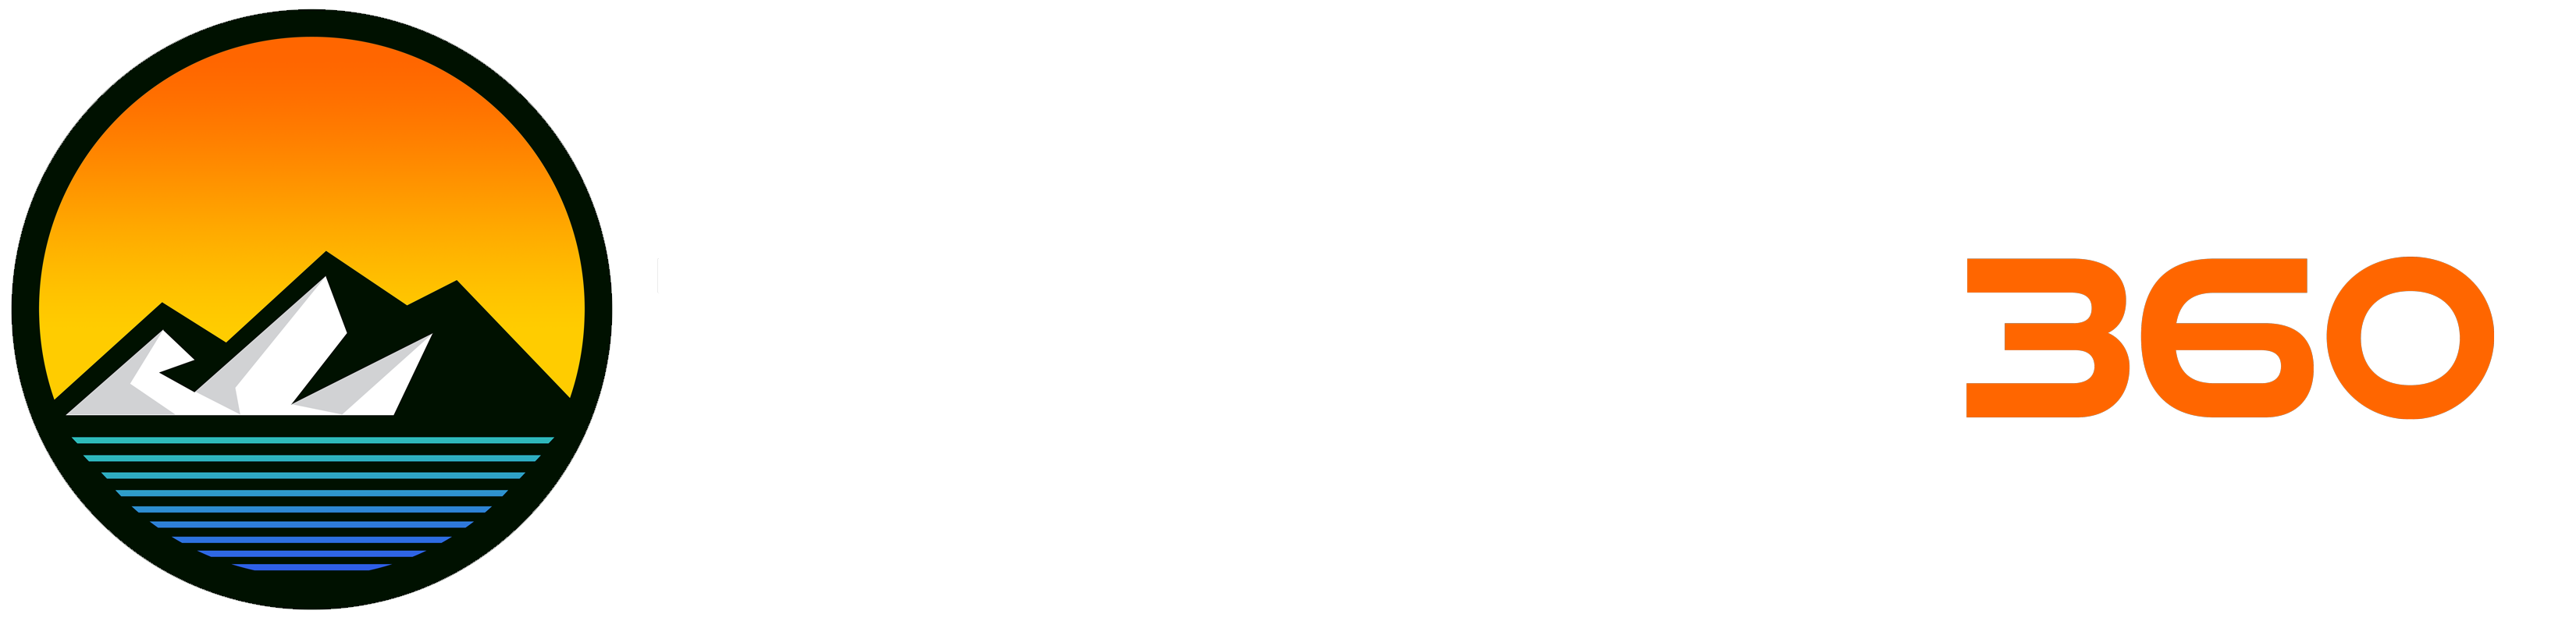 TriLakes360-logo-v3